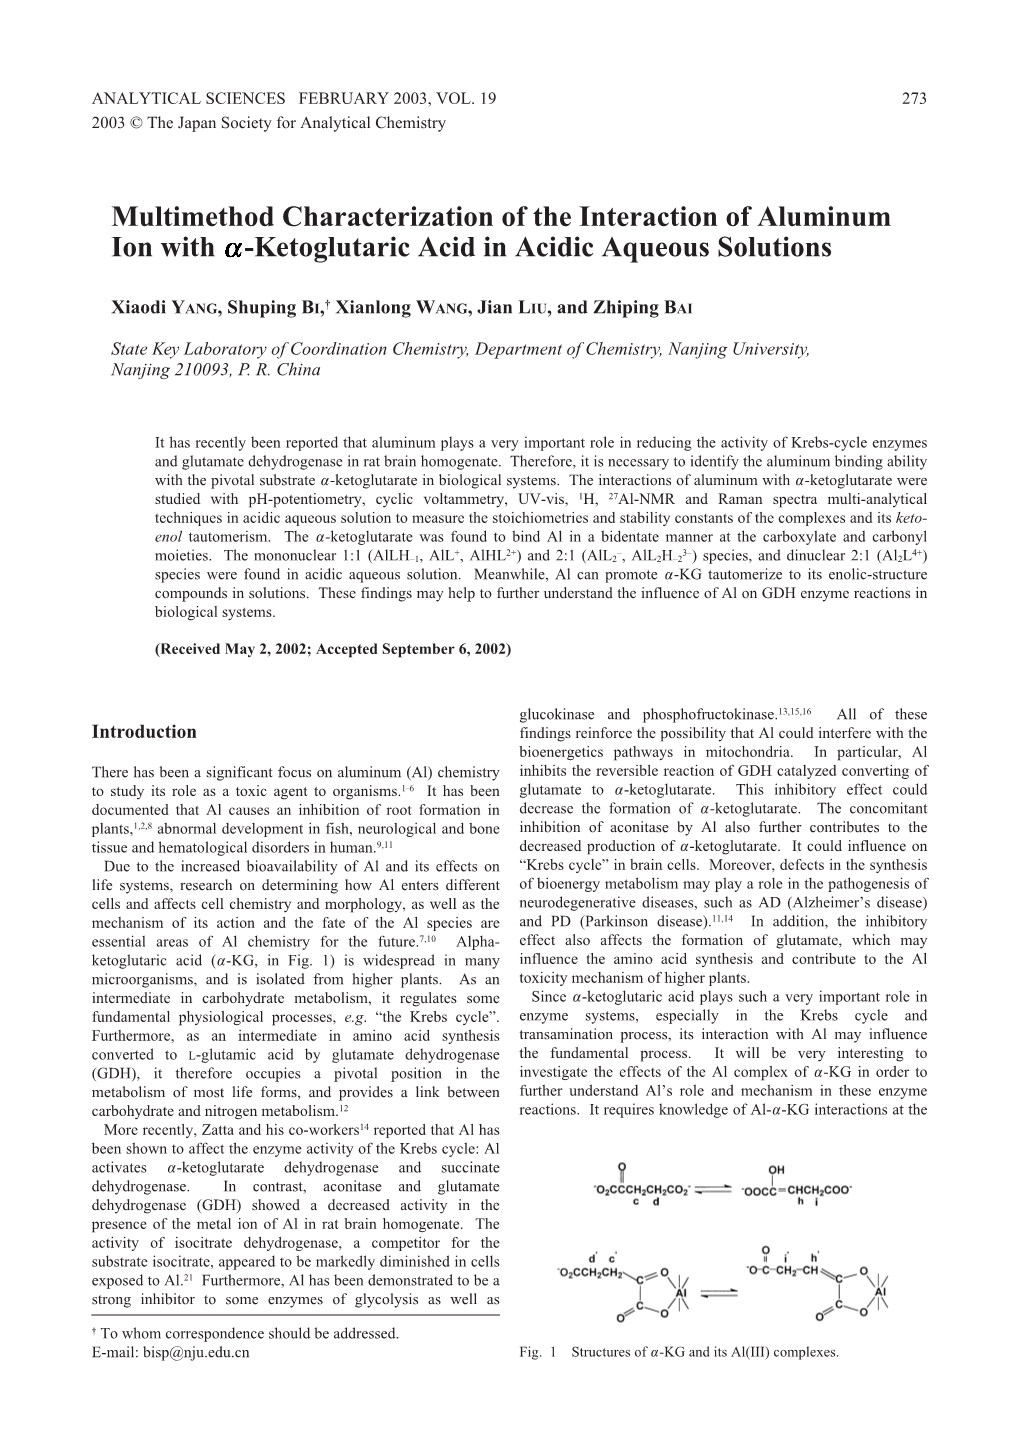 Ketoglutaric Acid in Acidic Aqueous Solutions